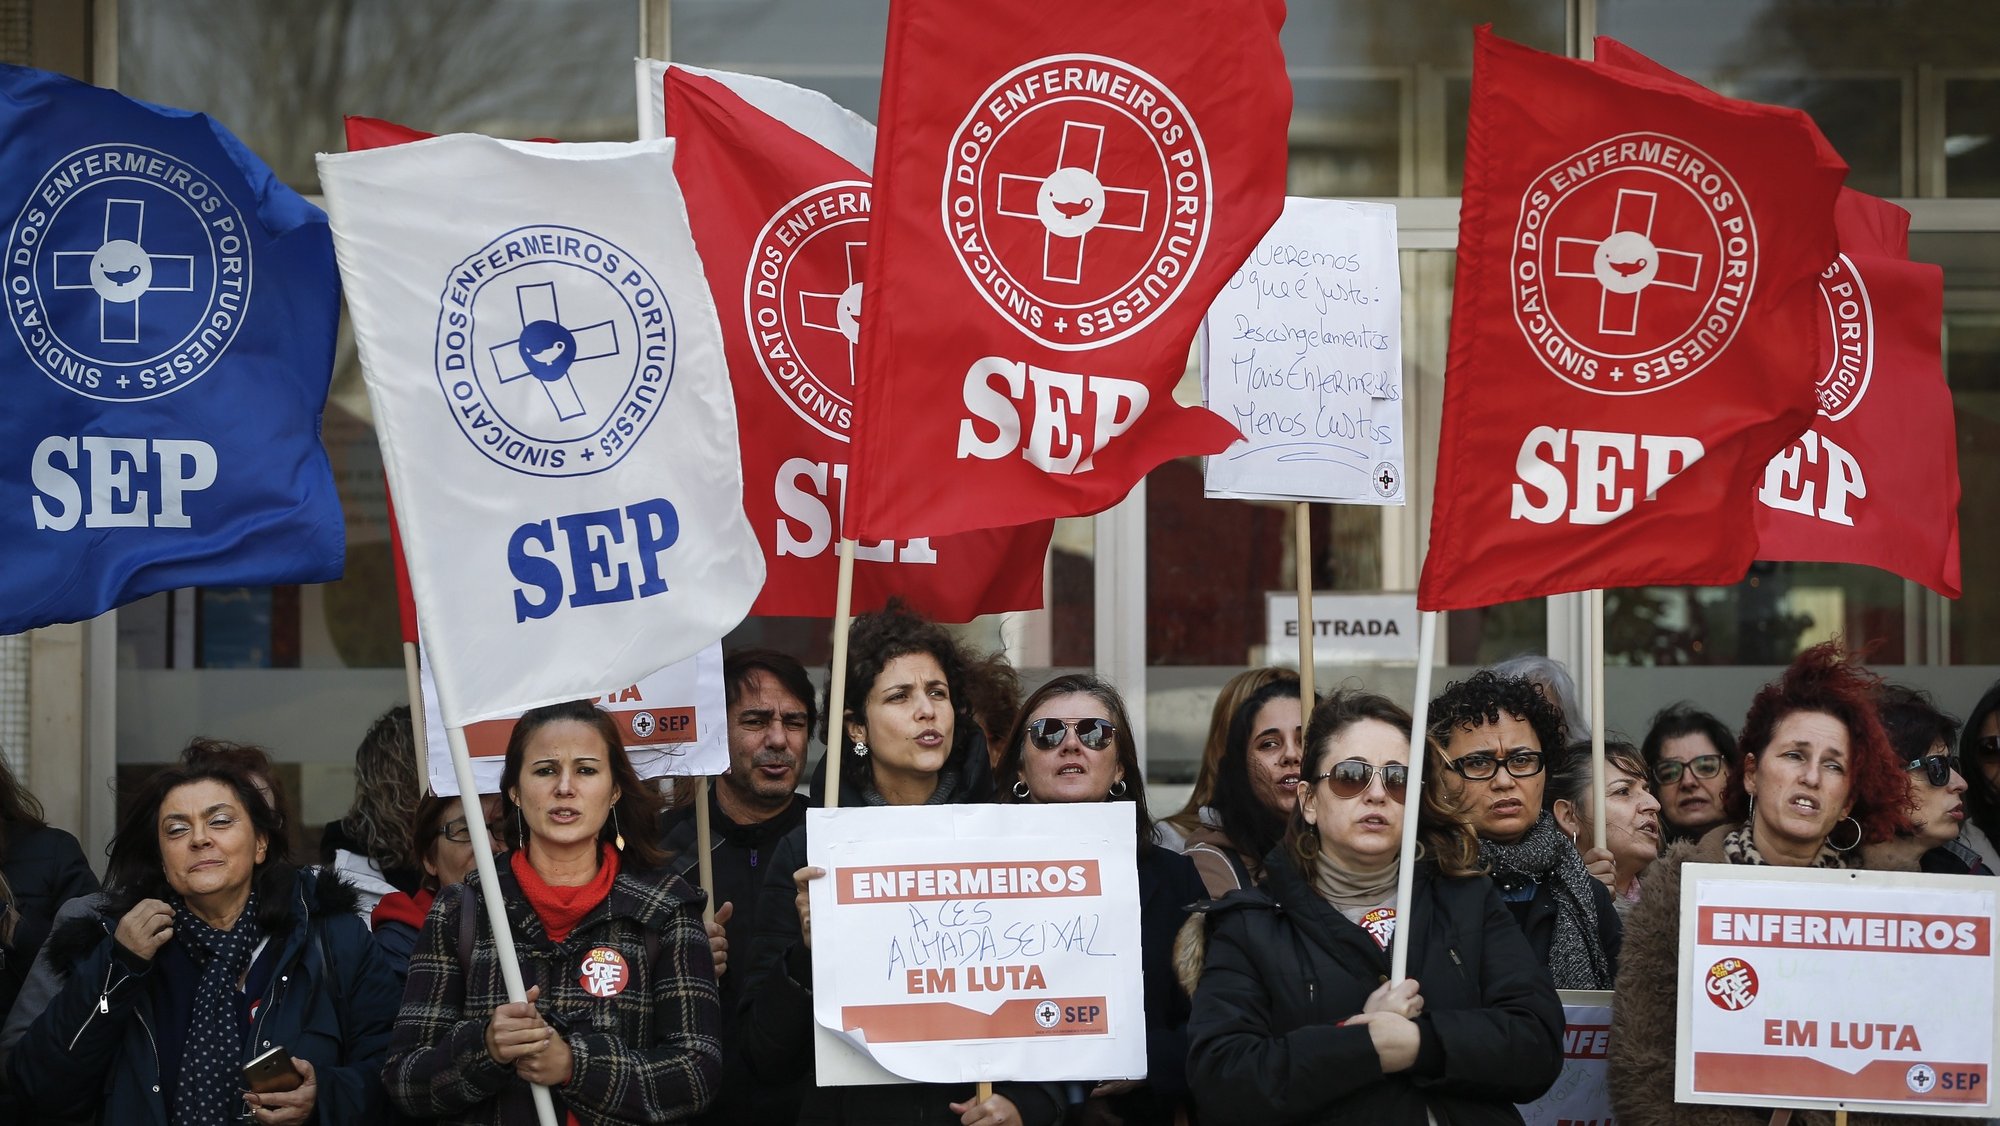 Enfermeiros em protesto durante a greve convocada pelo Sindicato dos Enfermeiros Portugueses (SEP), em frente à ARSLVT - Administração Regional de Saúde de Lisboa e Vale do Tejo, em Lisboa, 12 de dezembro de 2019. RODRIGO ANTUNES/LUSA